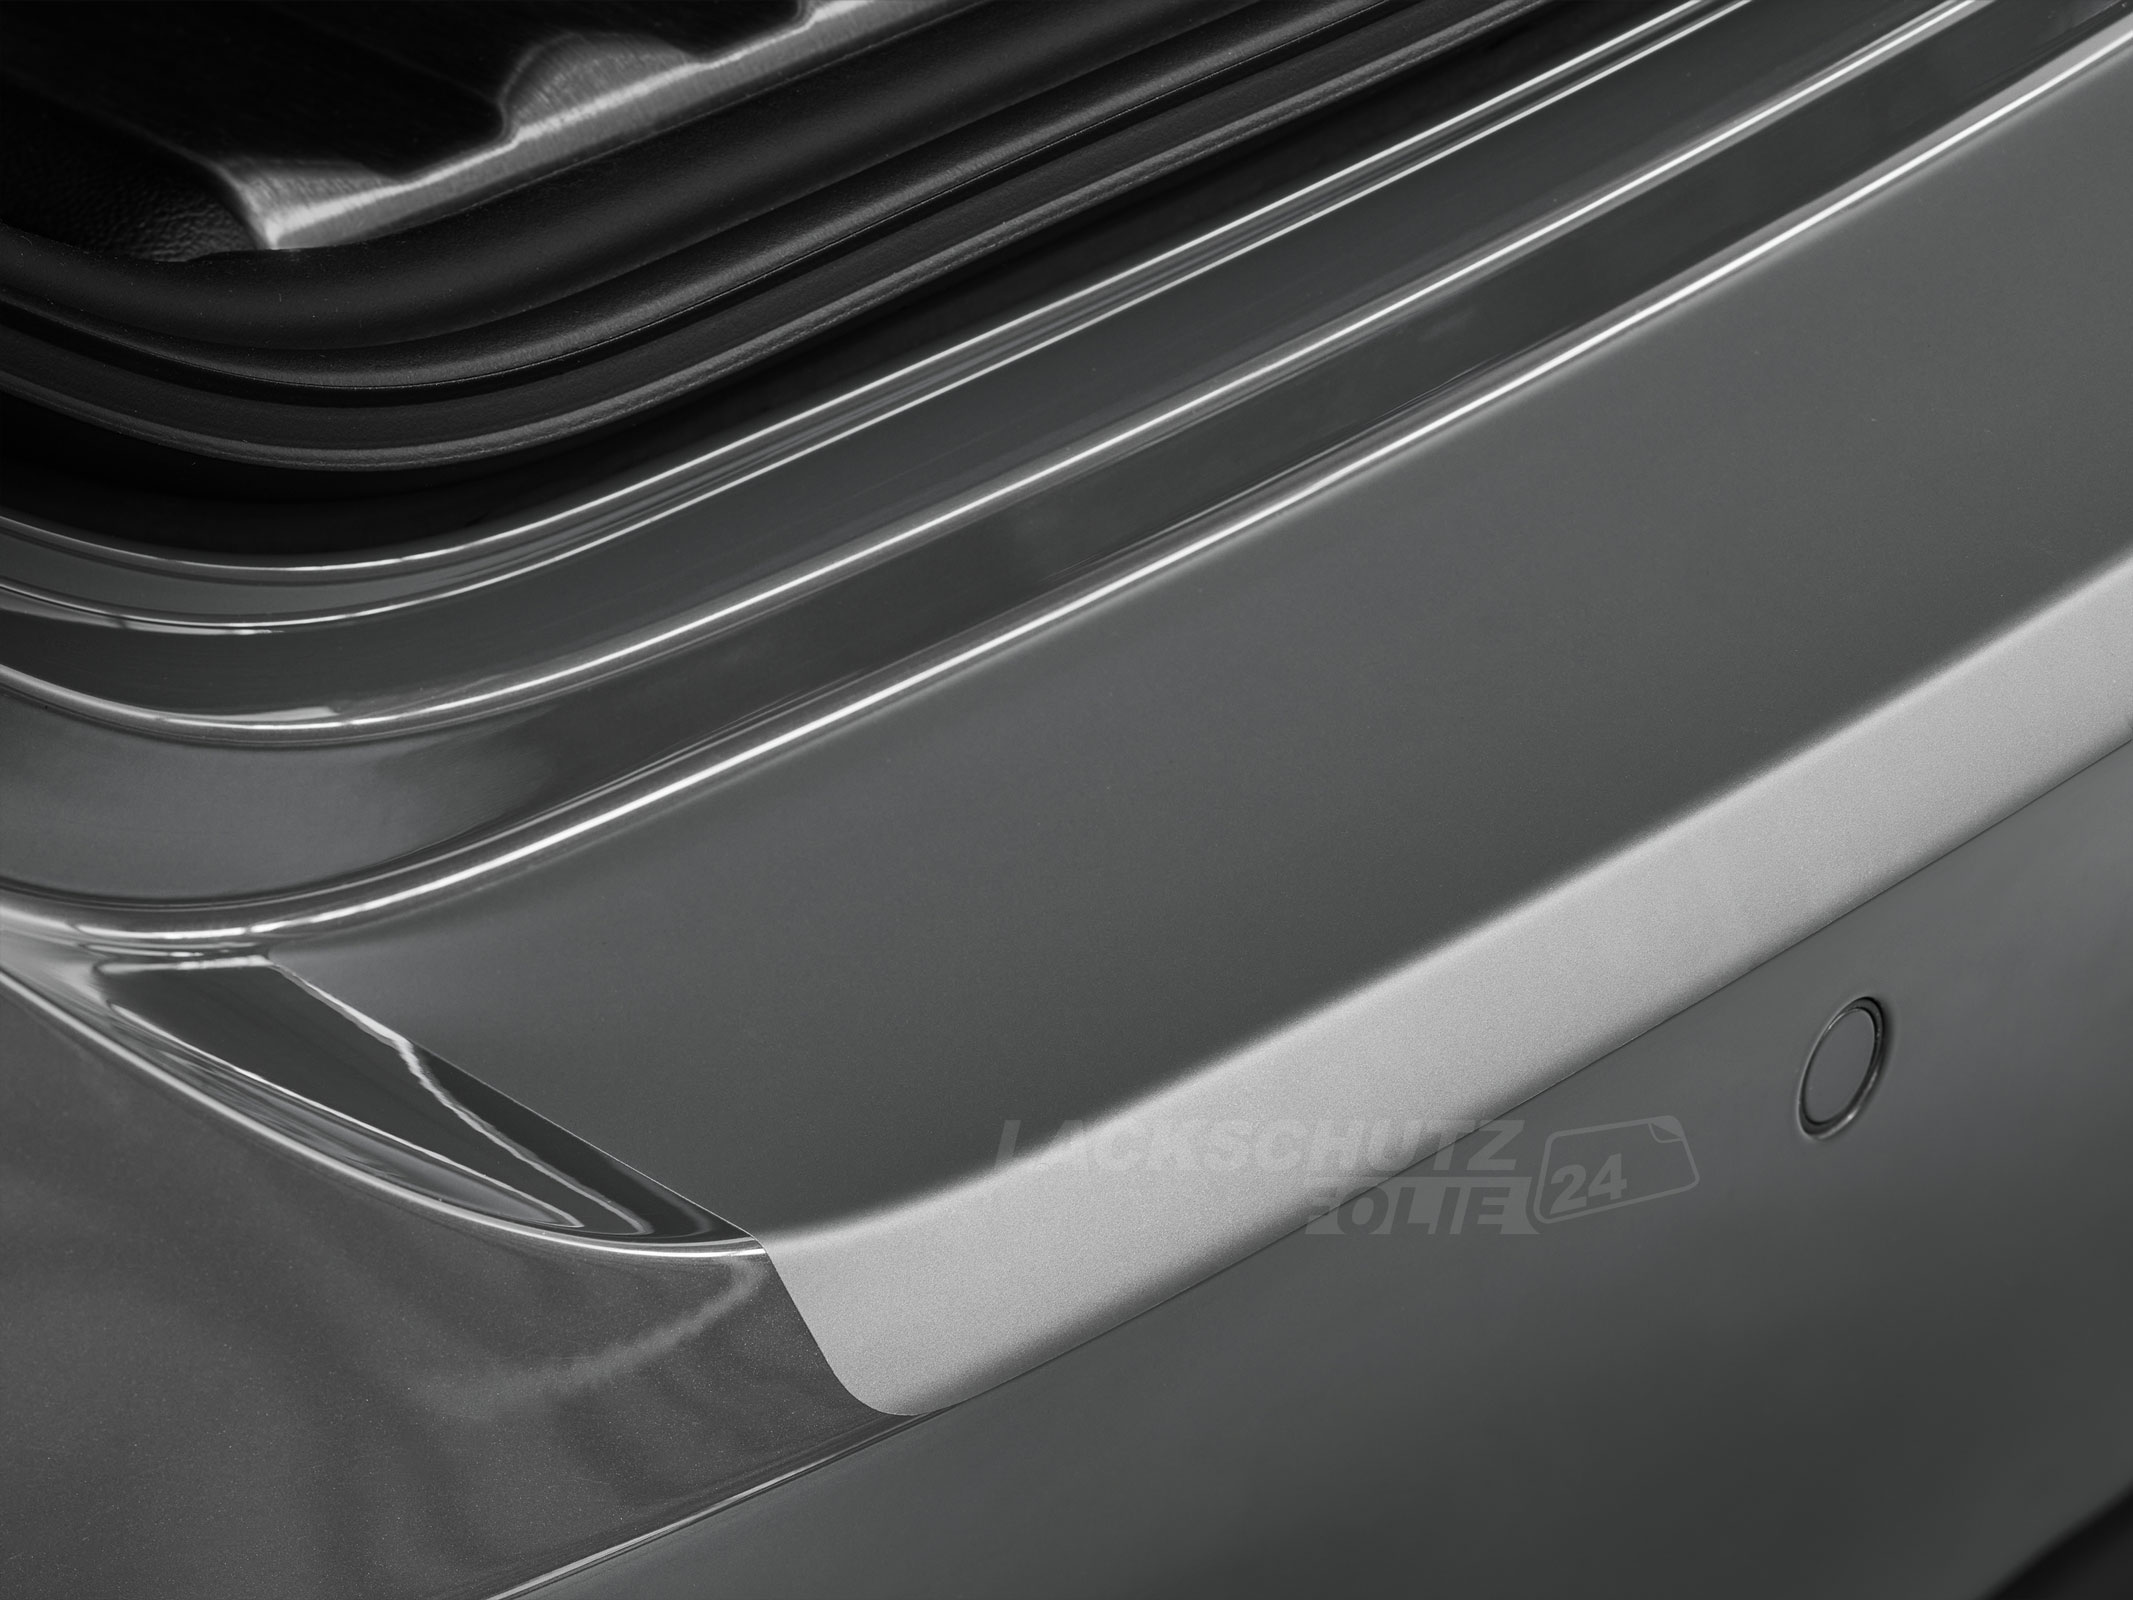 Ladekantenschutzfolie - Transparent Glatt MATT für Mitsubishi Outlander (III) PHEV, Typ CWo, Facelift, ab BJ 2015